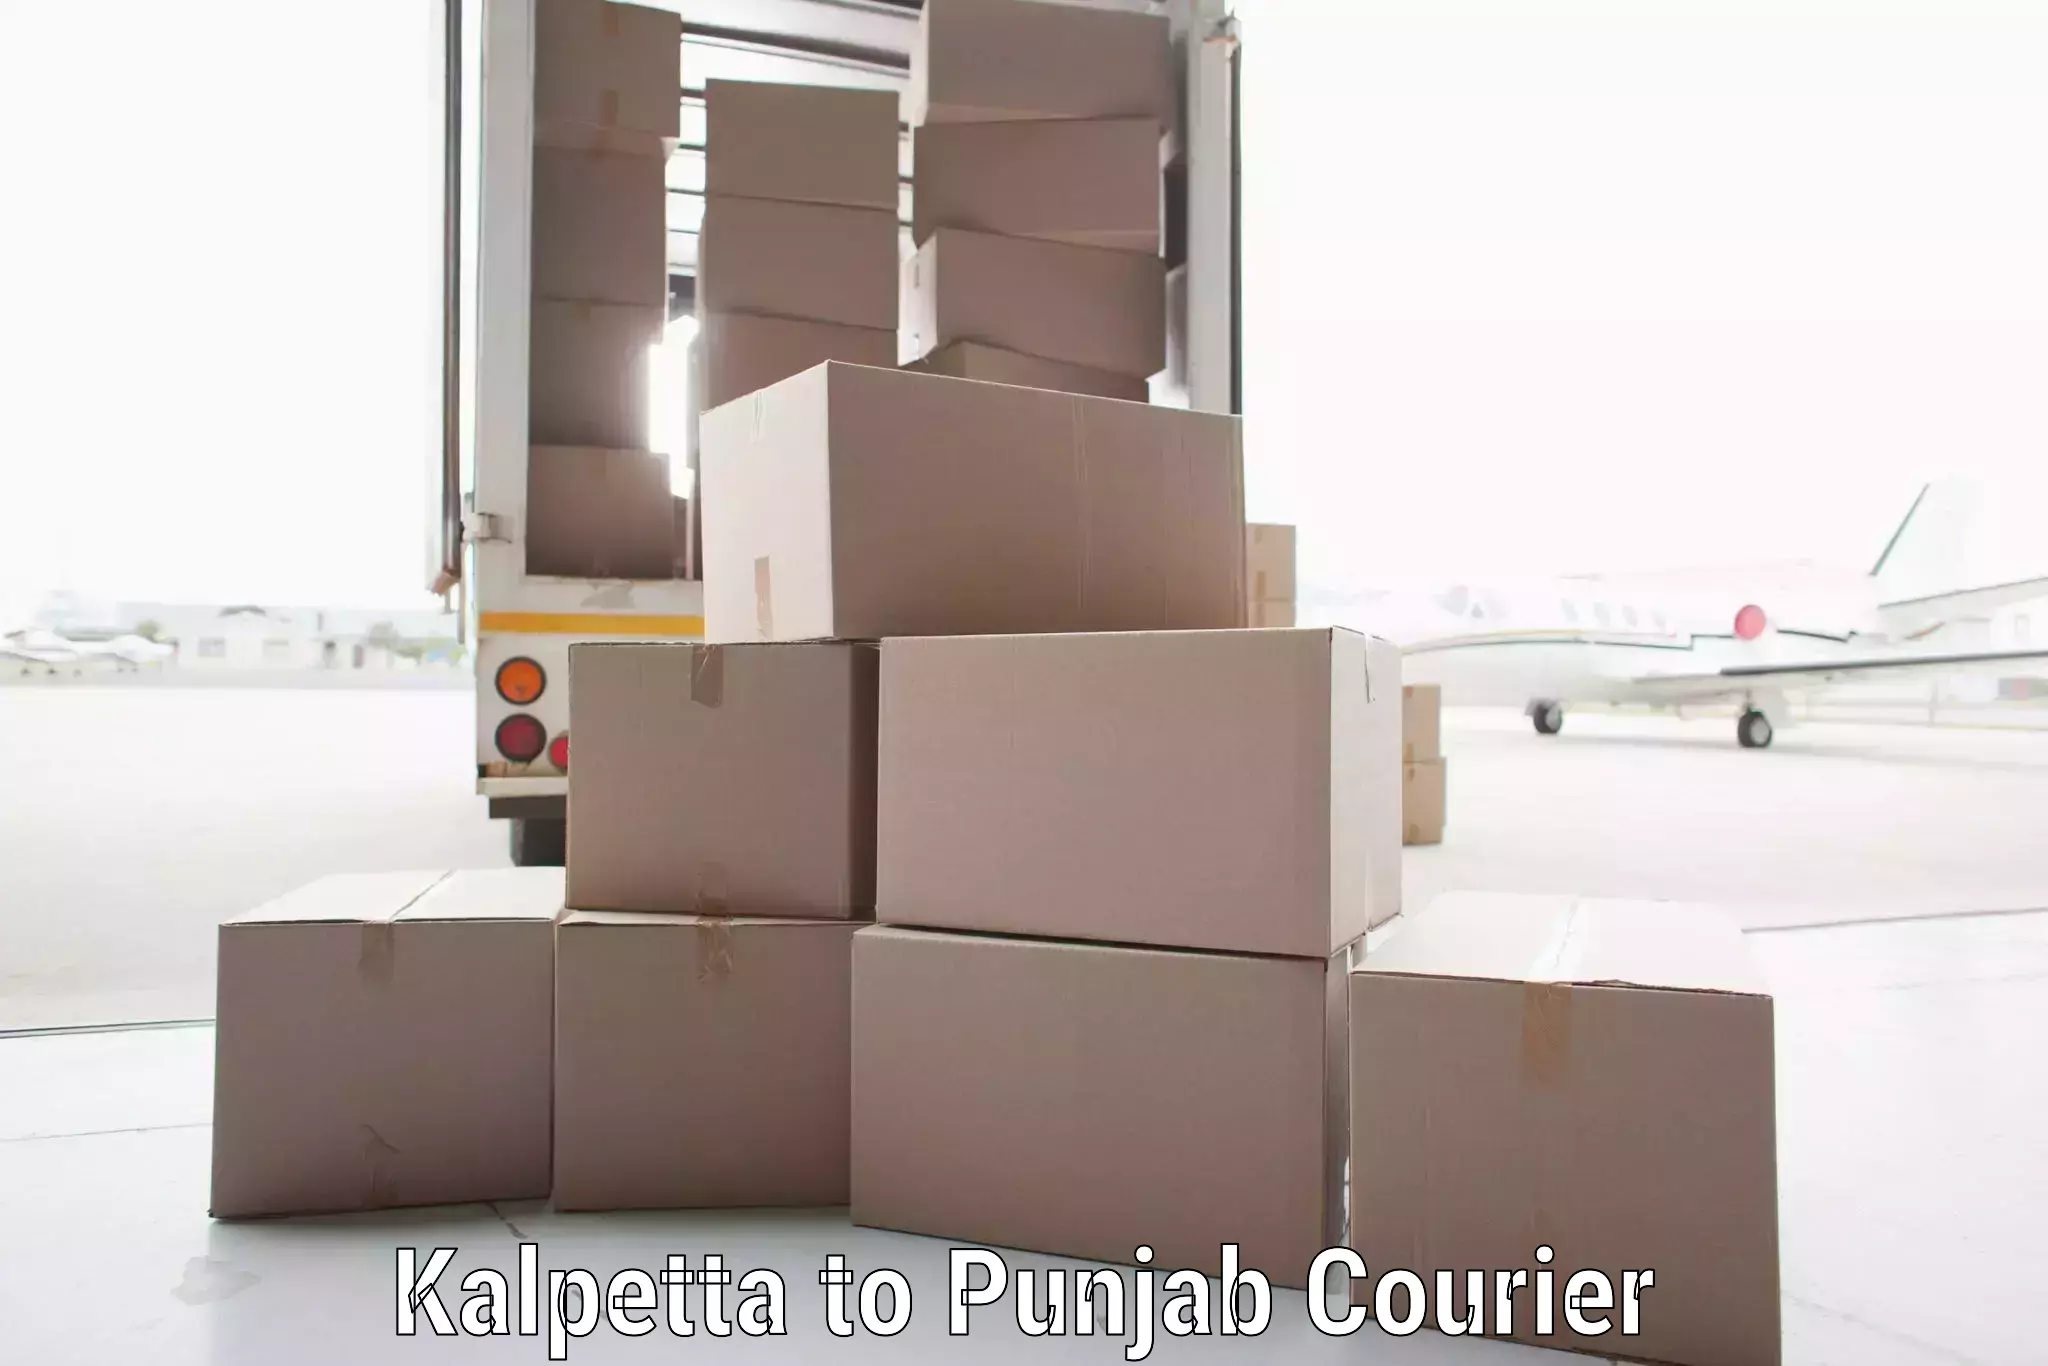 Modern courier technology Kalpetta to Punjab